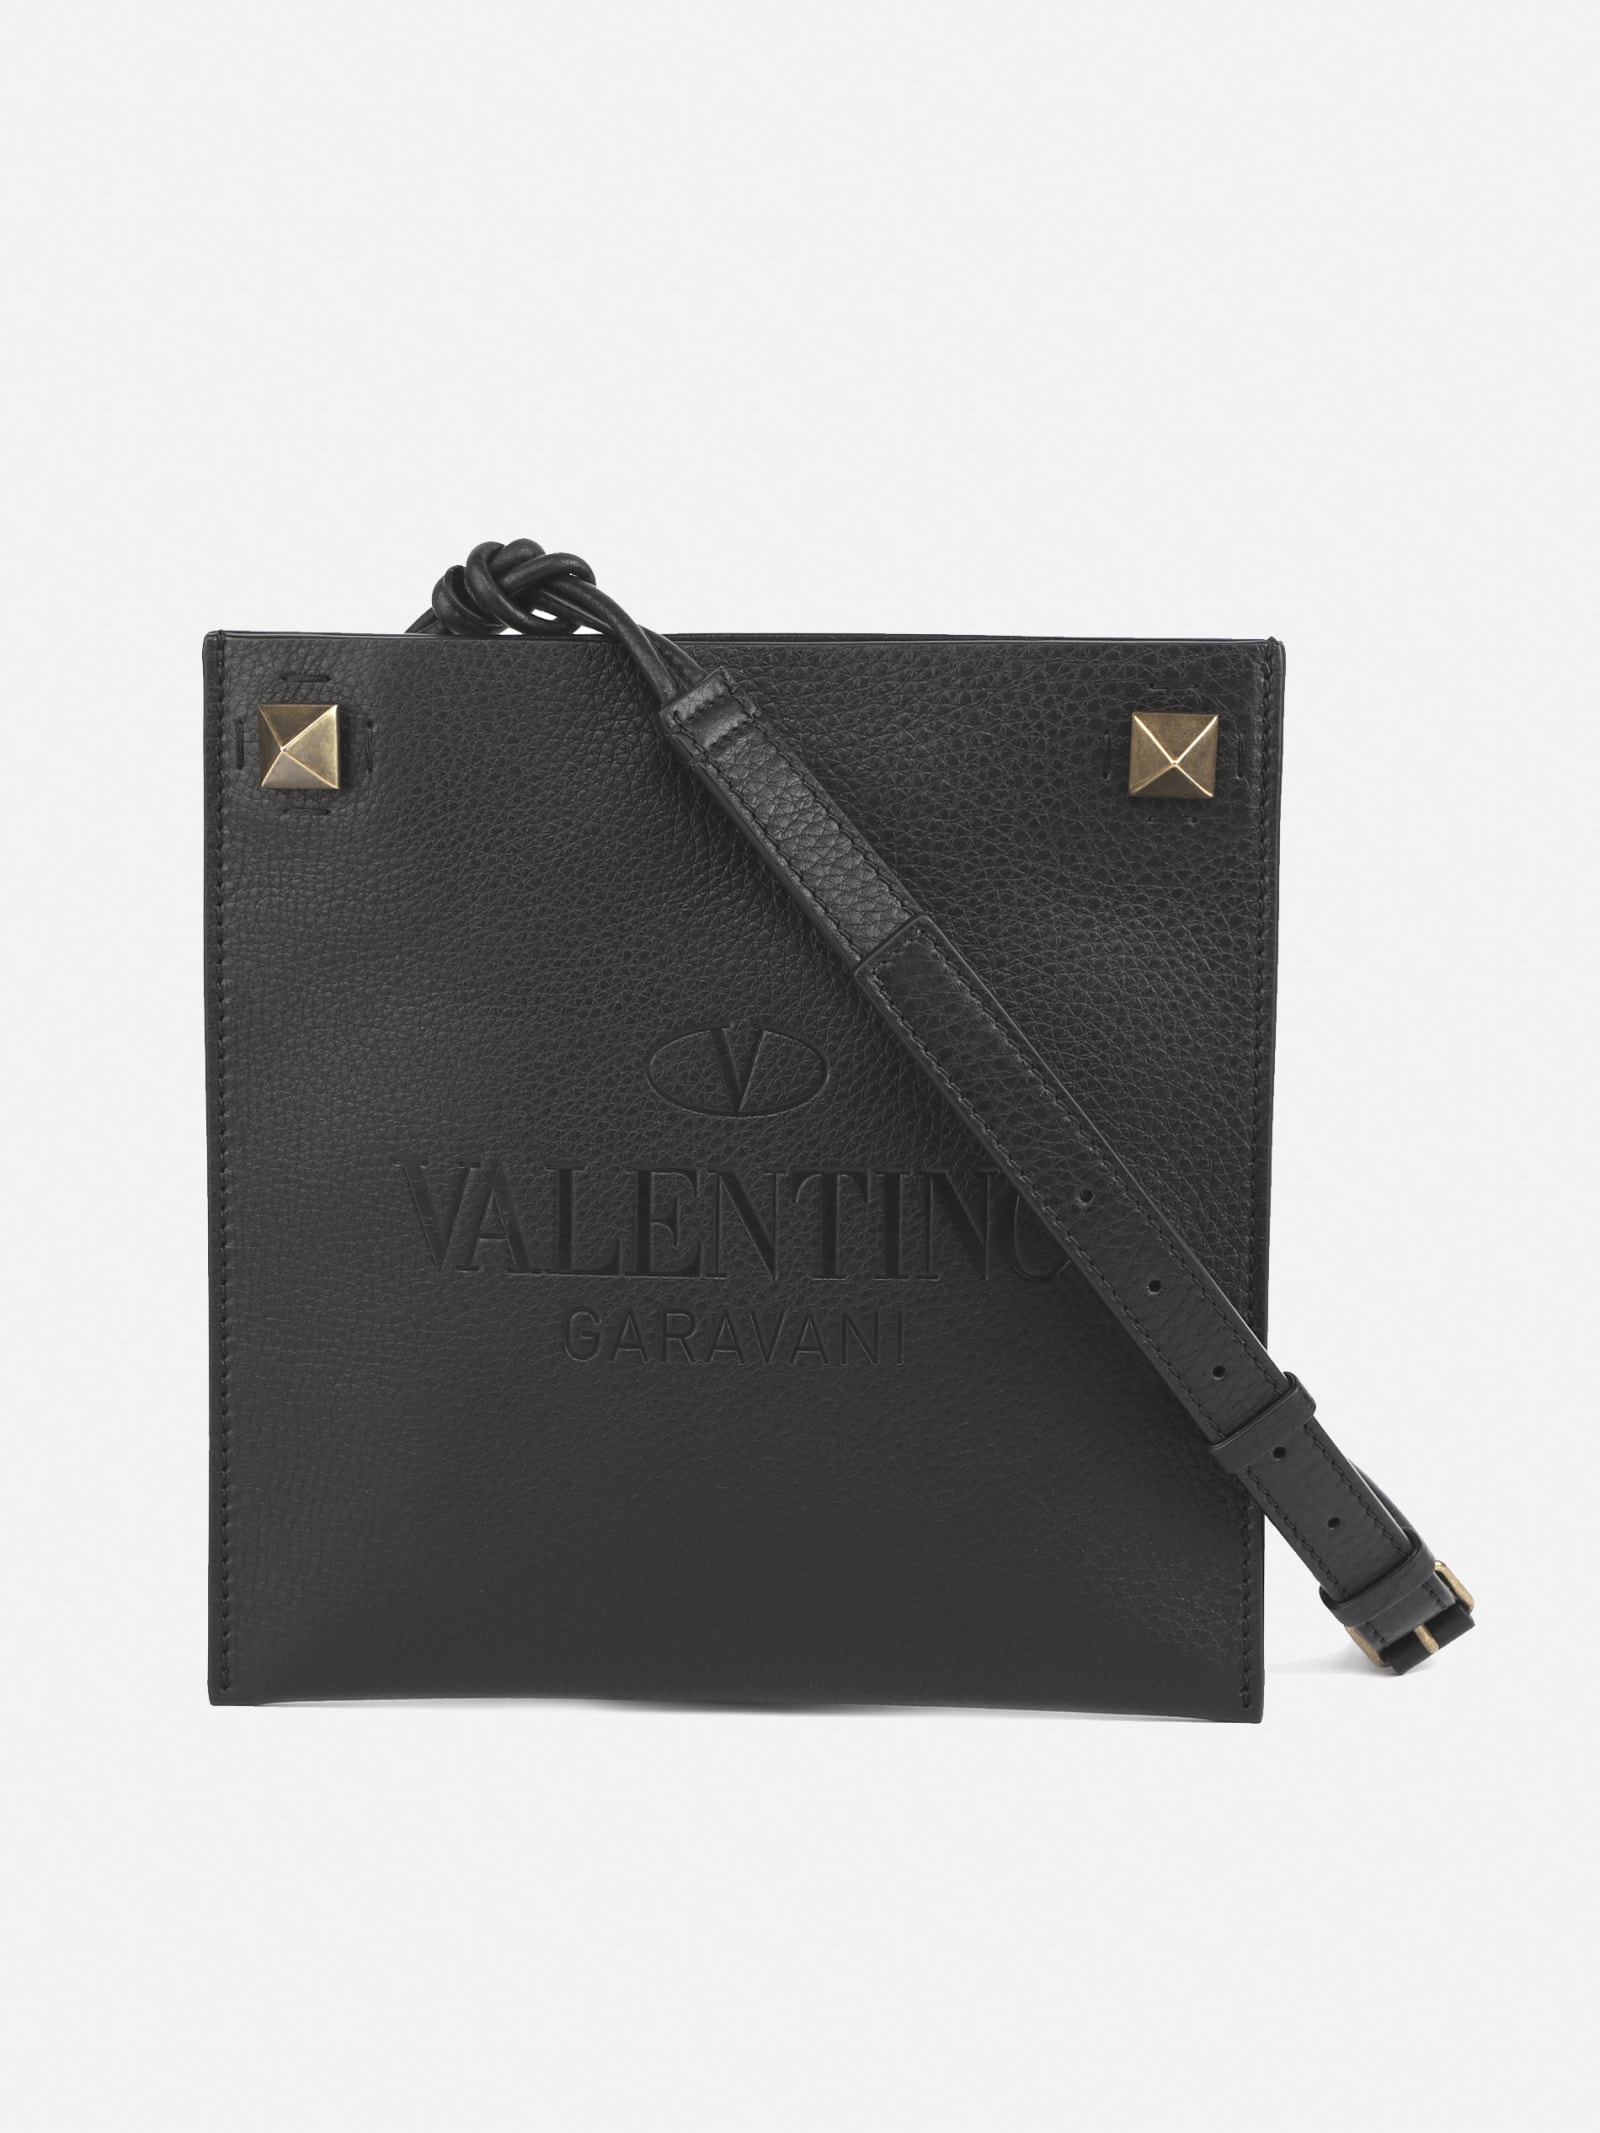 Valentino Garavani Shoulder Bag In Textured Leather